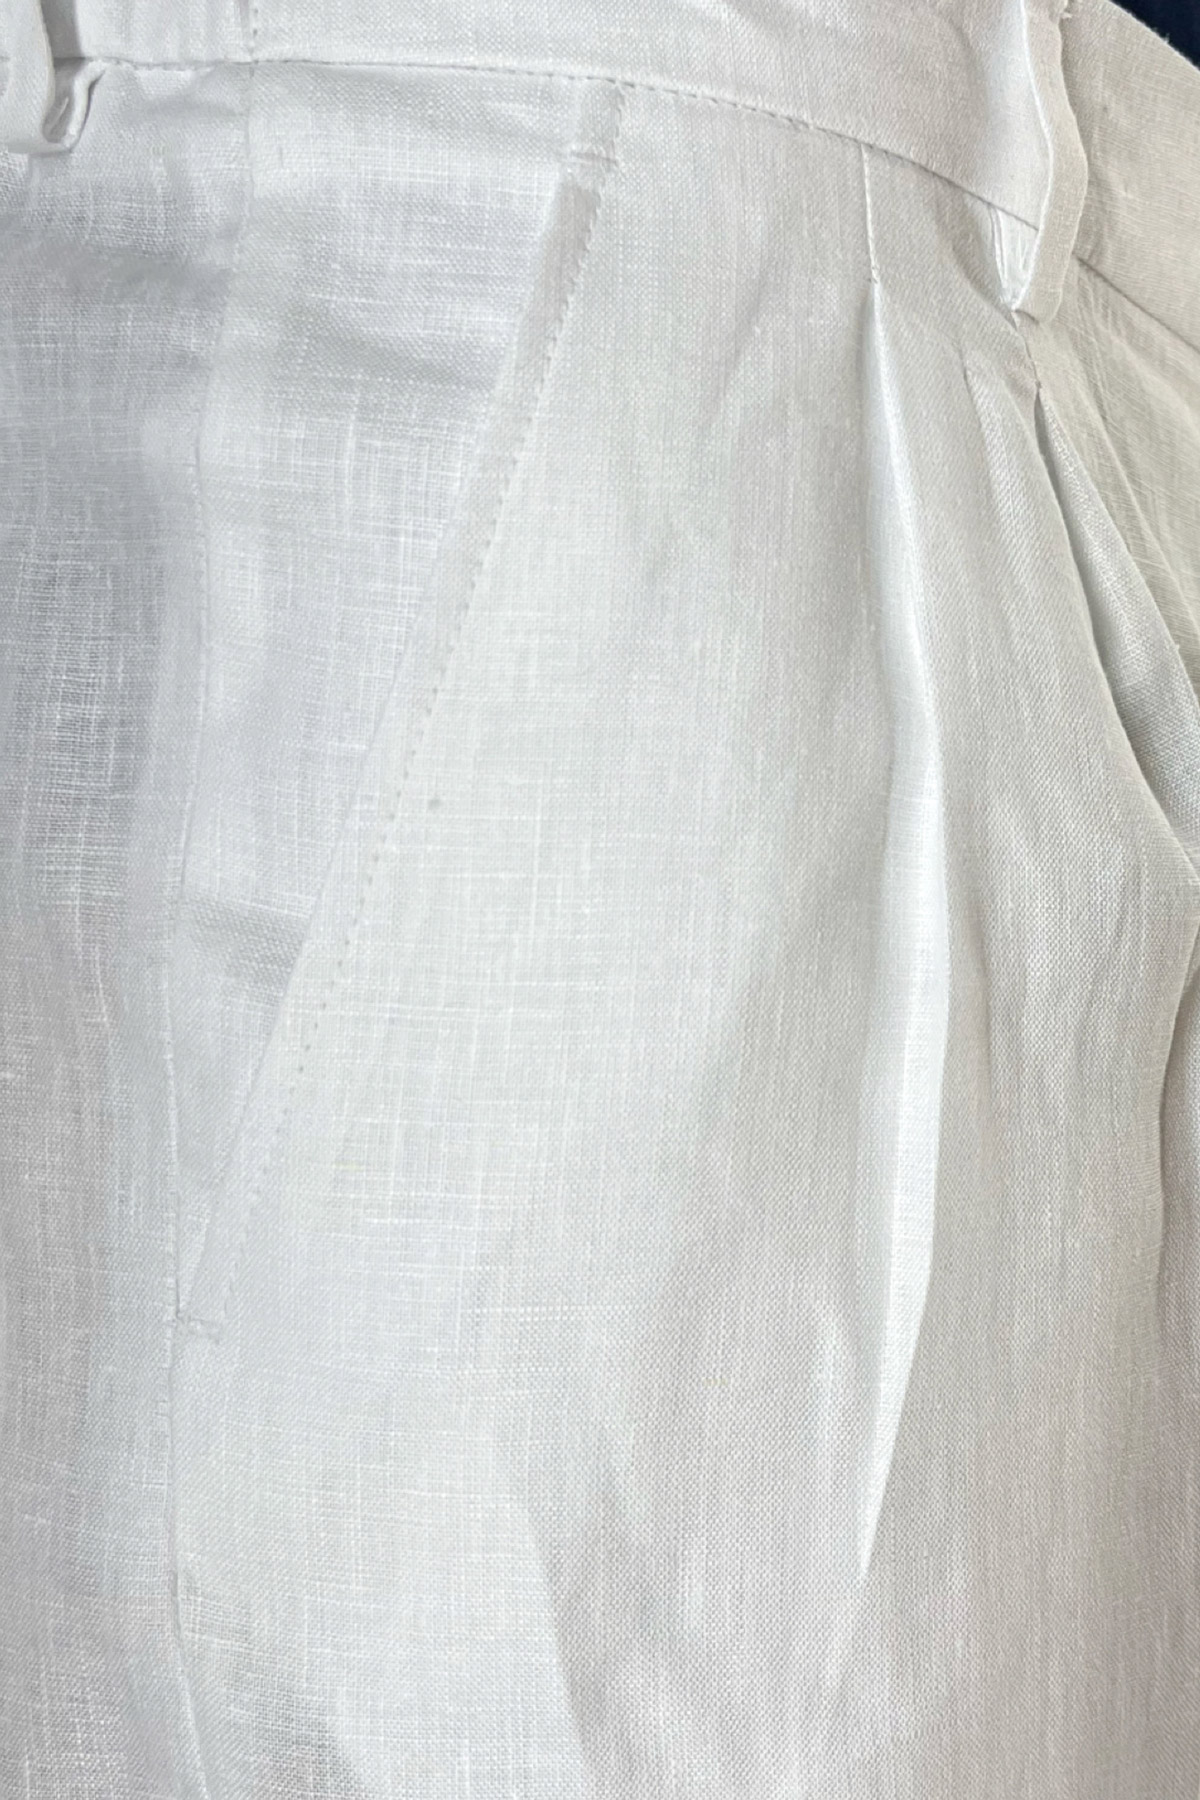 Bermuda uomo bianco in lino 100% con mezza coulisse doppia pinces e tasca america